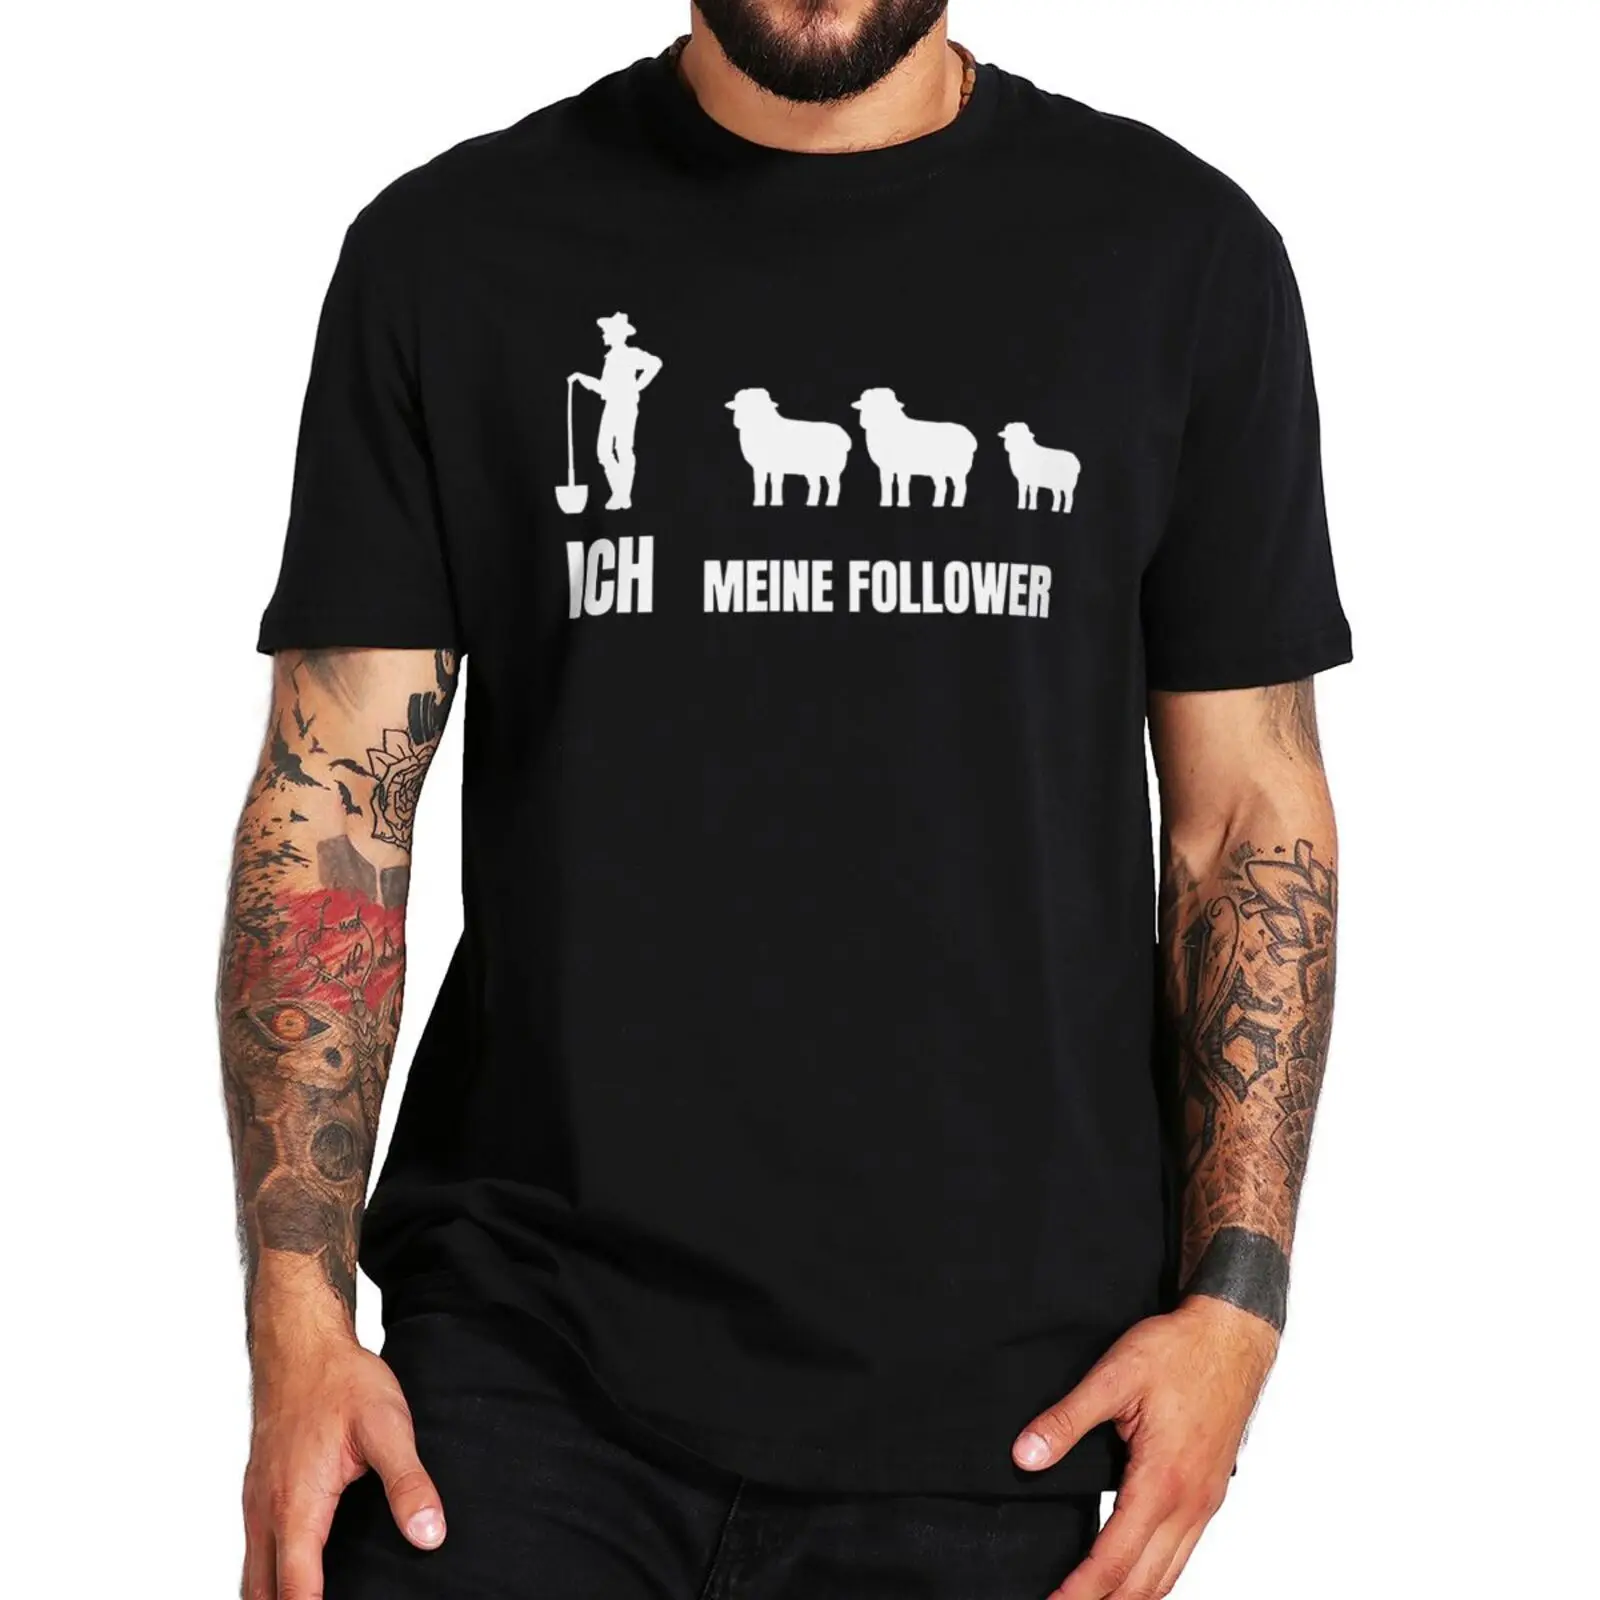 

Ich Meine Follower T Shirt Funny Sheep Saying Pun Humor Joke New Tshirt Casual Summer 100% Cotton Premium T-shirts EU Size